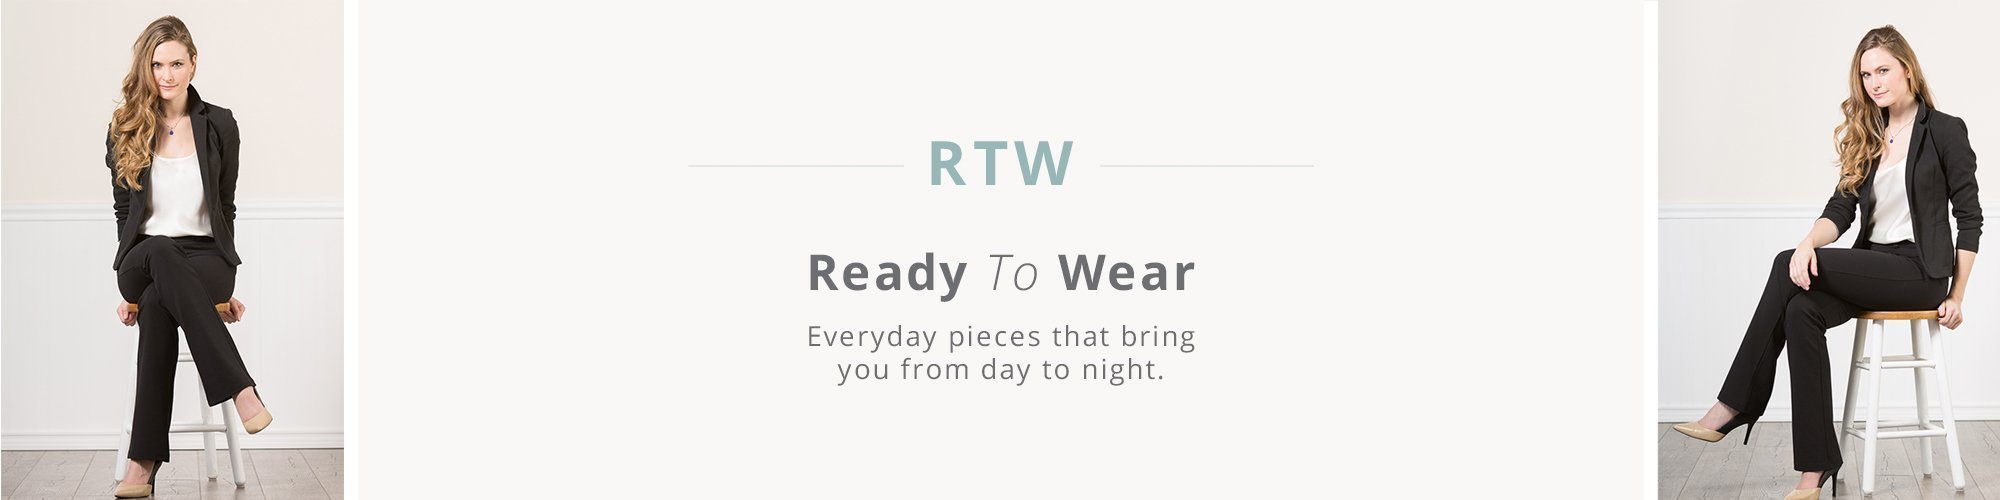 RTW: Ready To Wear